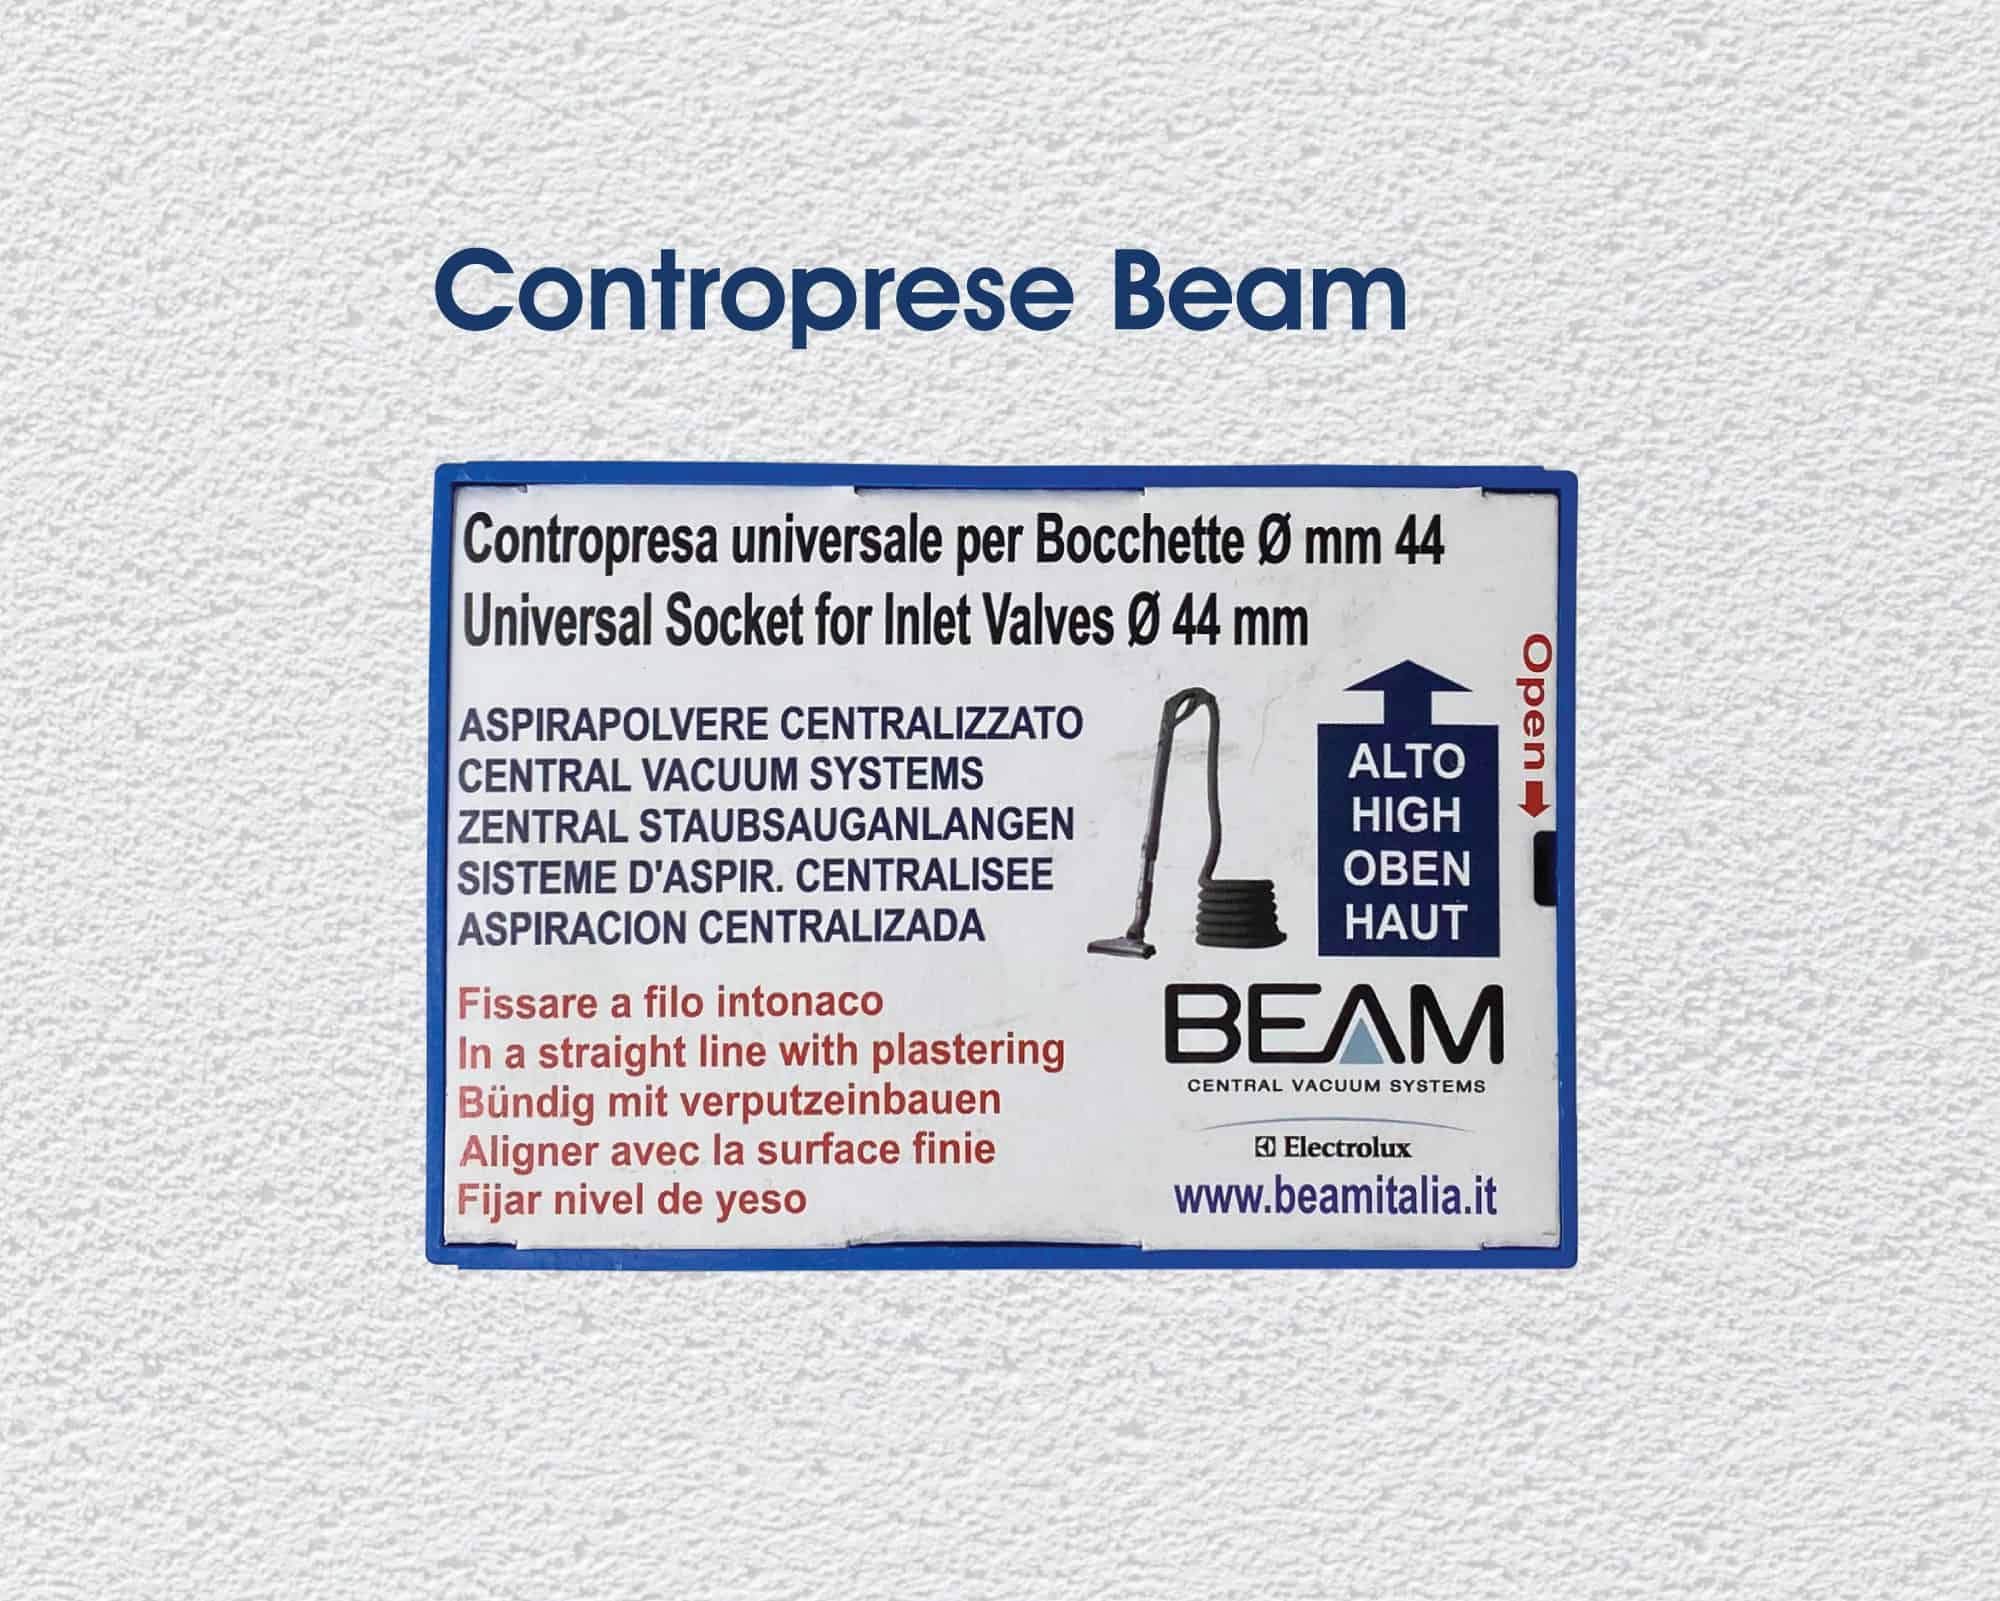 Questa presa può essere installata nelle controprese per aspirapolvere centralizzato Beam. Contropresa aspirazione centralizzata Beam colore blu con coperchio salvaintonaco in cartone